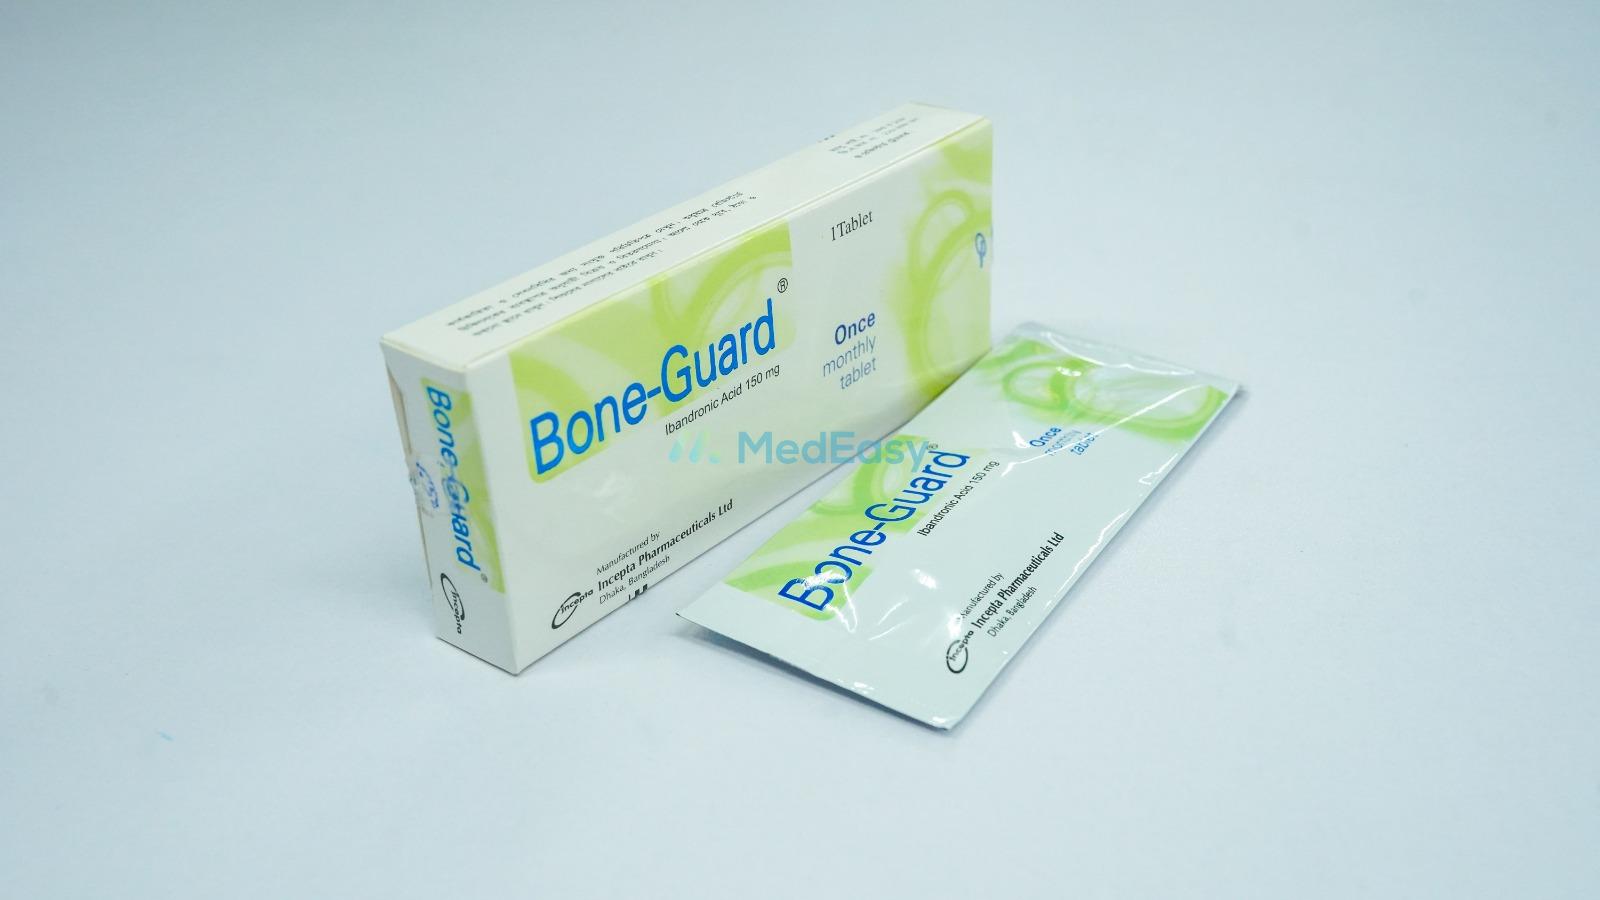 Bone-Guard